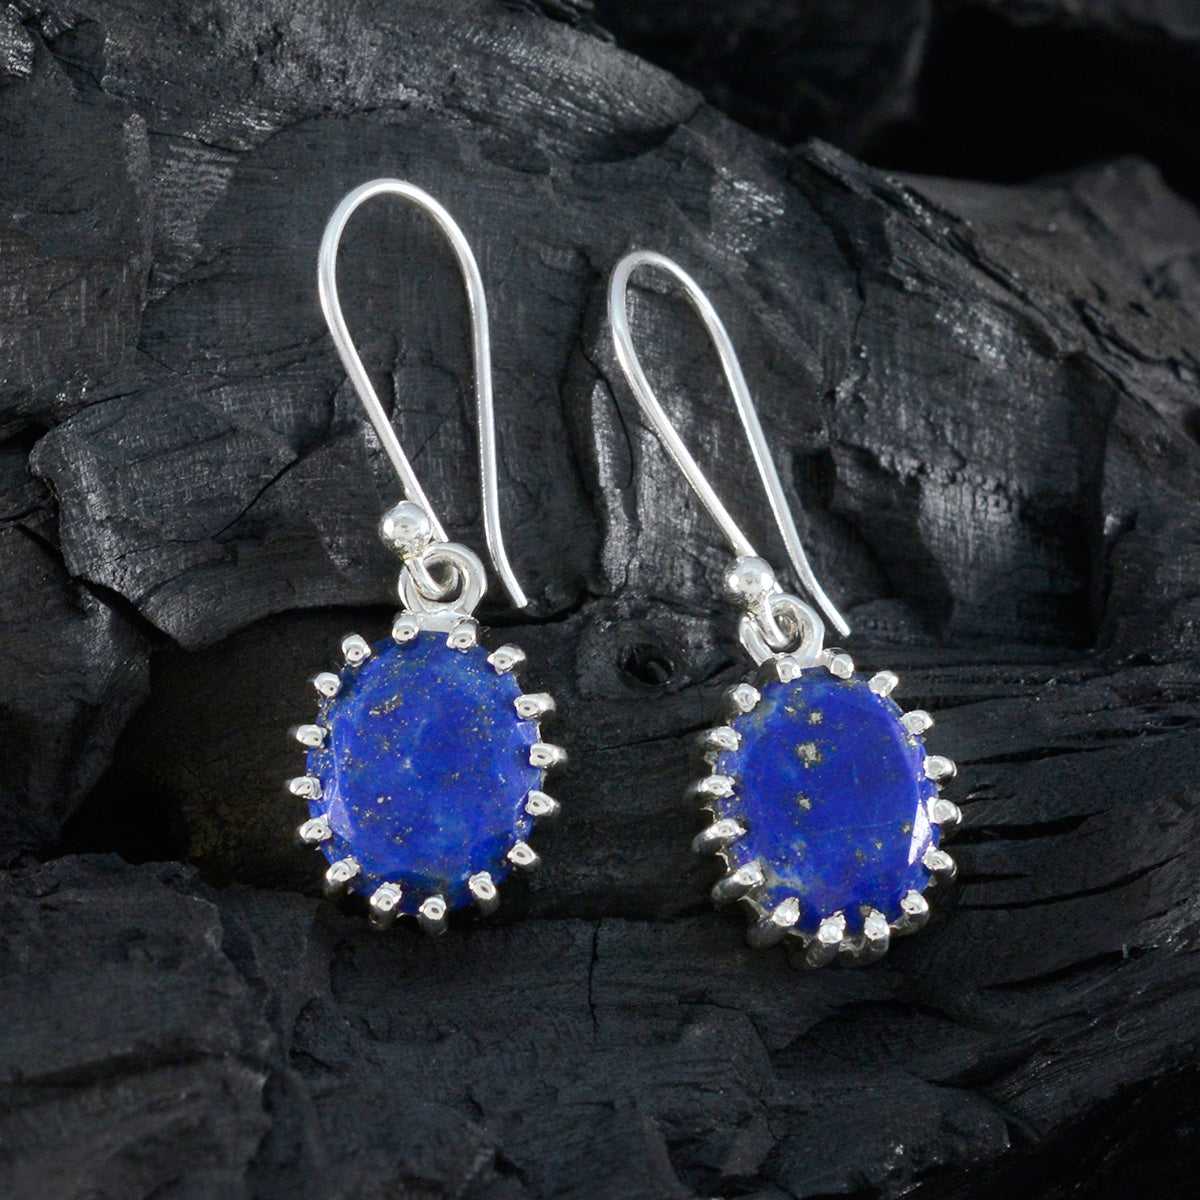 Riyo Heißer 925 Sterling Silber Ohrring Für Frauen Lapis Lazuli Ohrring Lünette Fassung Blau Ohrring Baumeln Ohrring